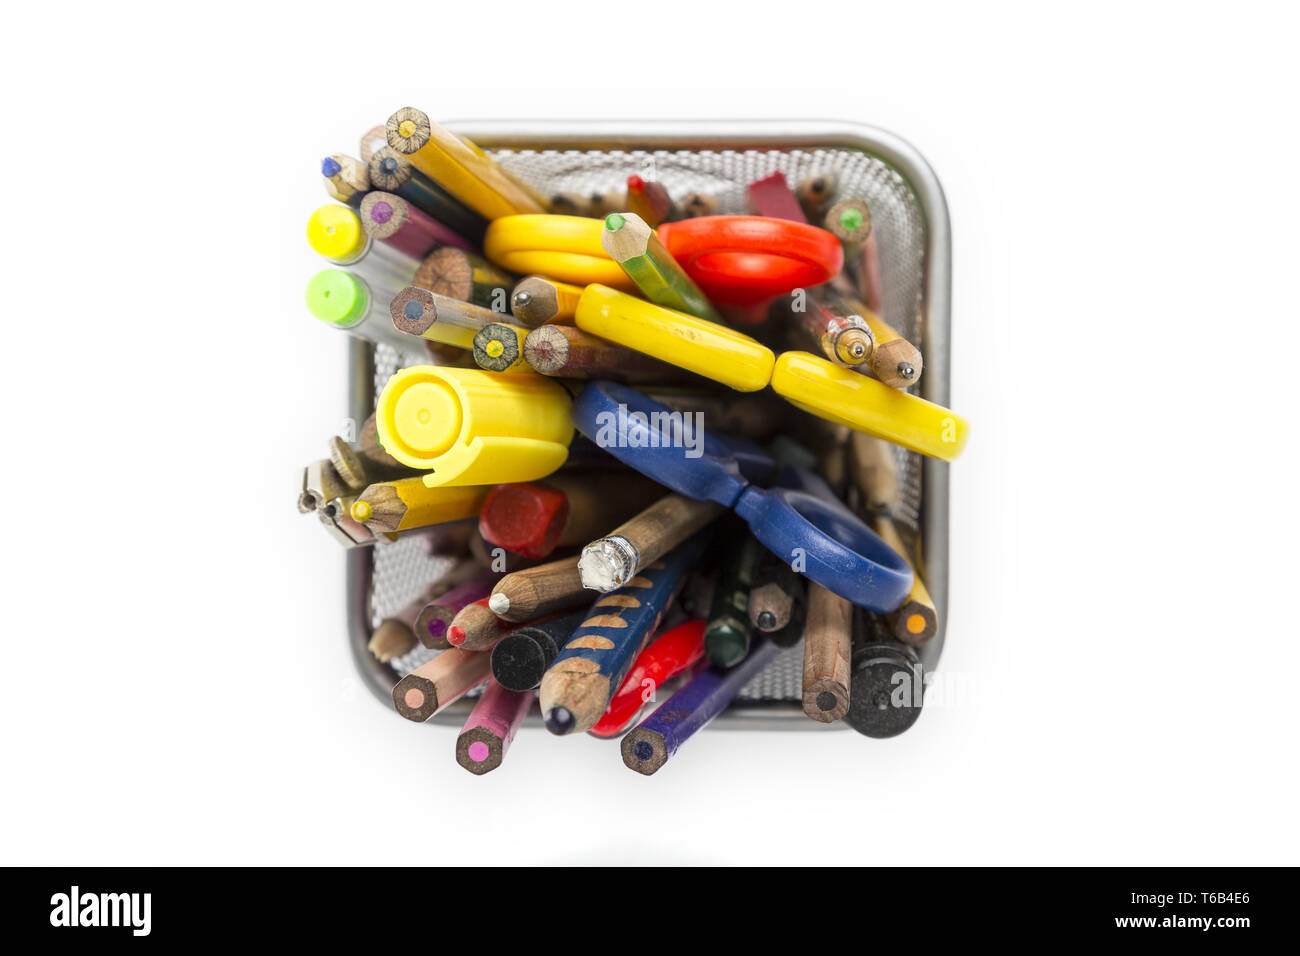 Vue de dessus d'un crayon pot avec les fournitures de bureau Photo Stock -  Alamy